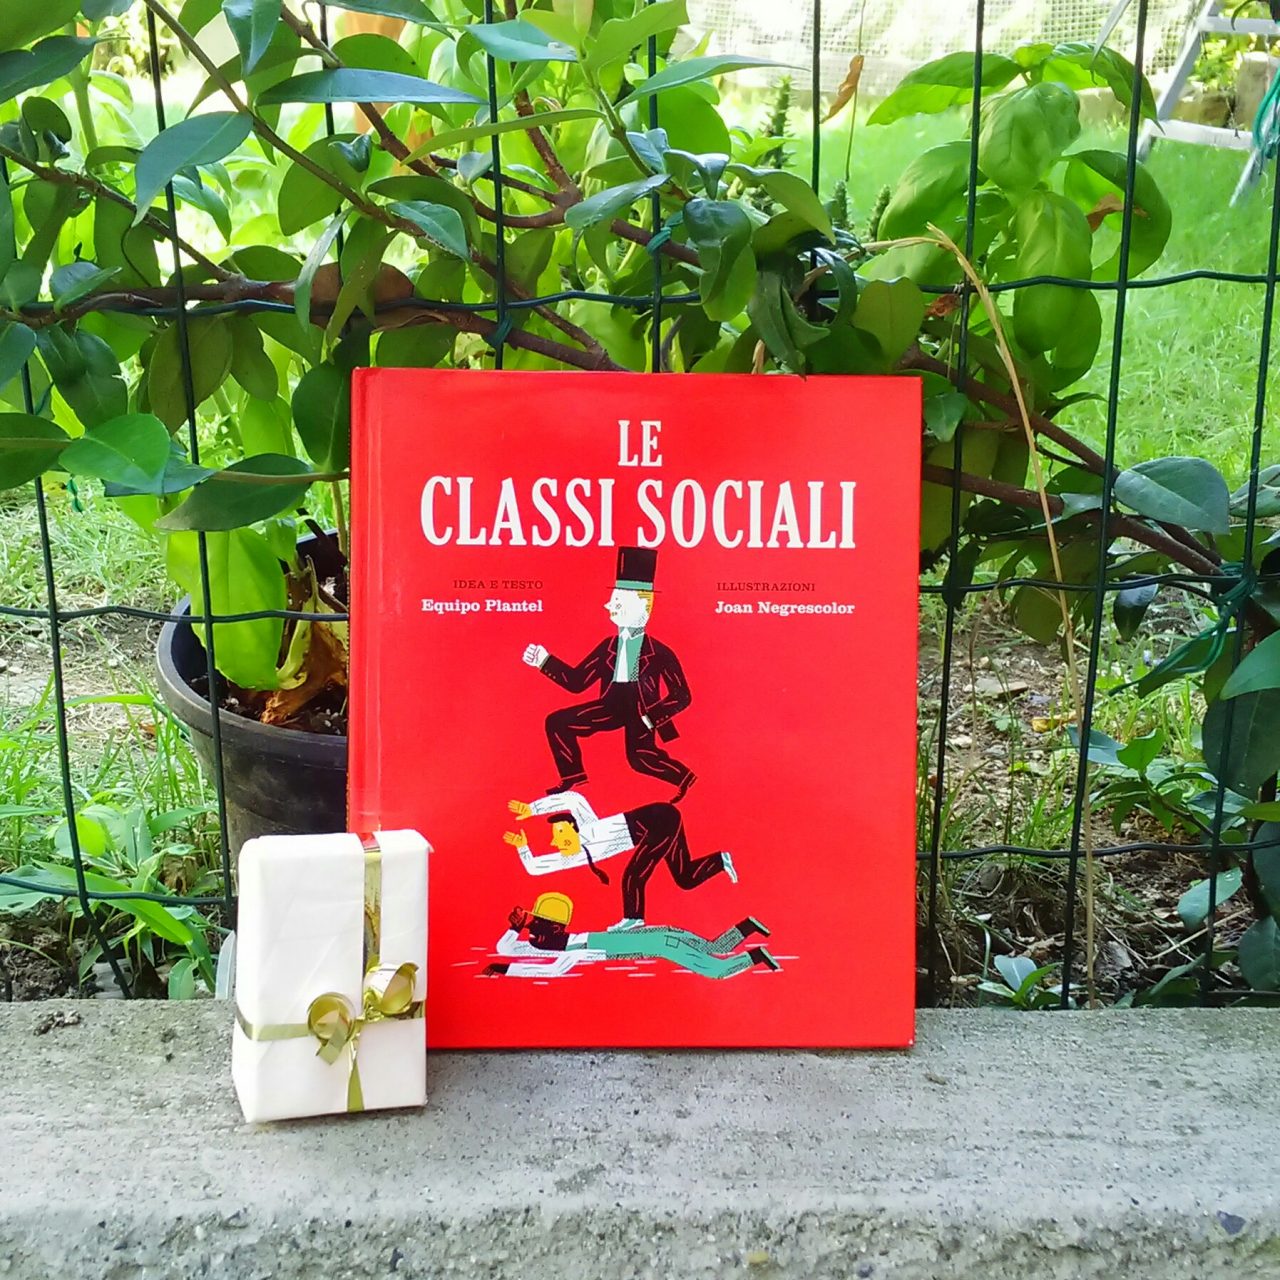 Social classes